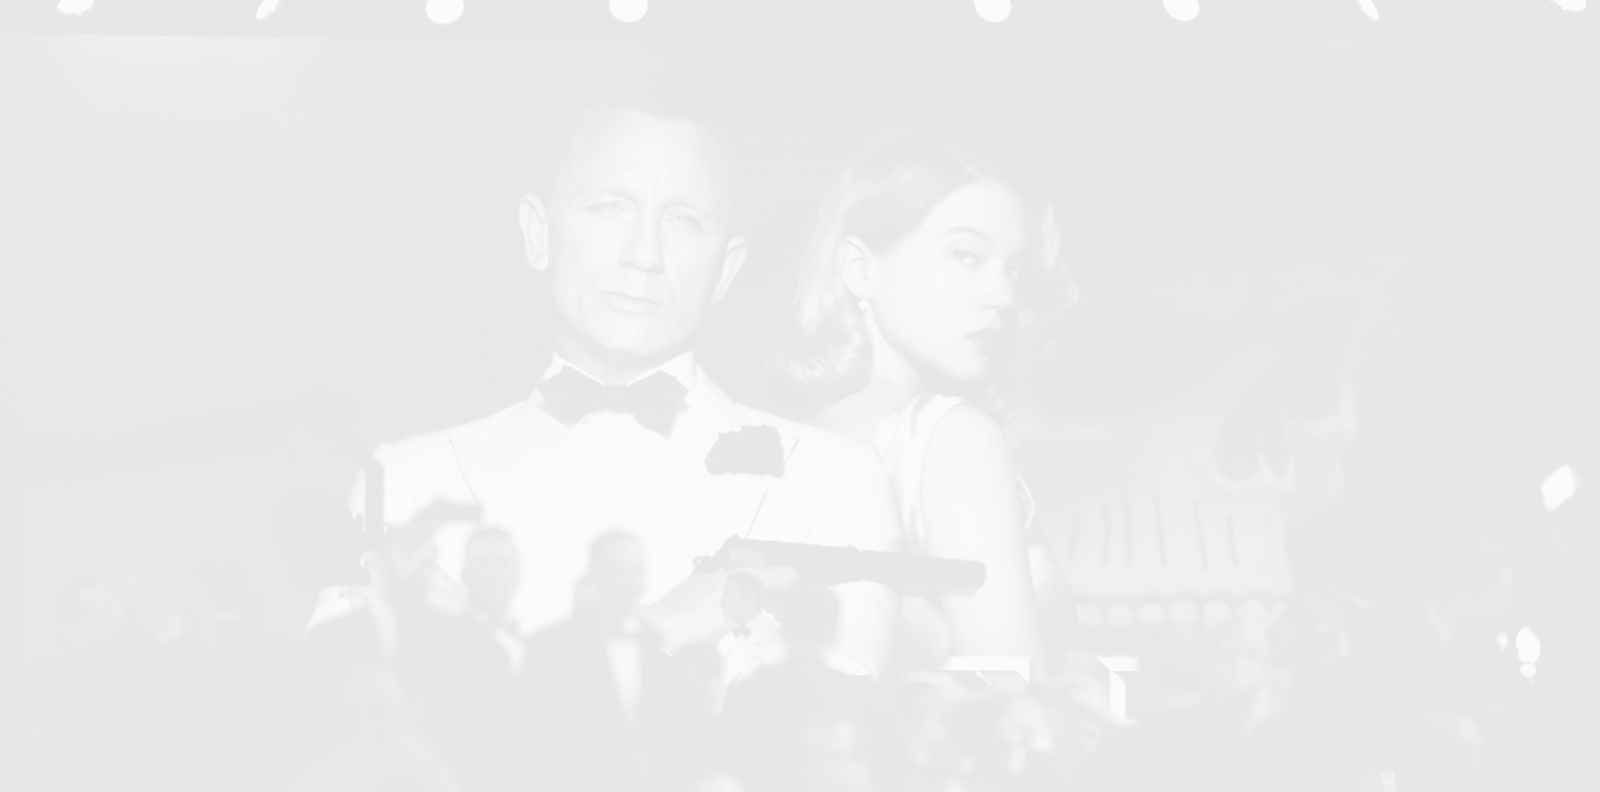 007: Актьорите, влизали в образа на легендарния Джеймс Бонд